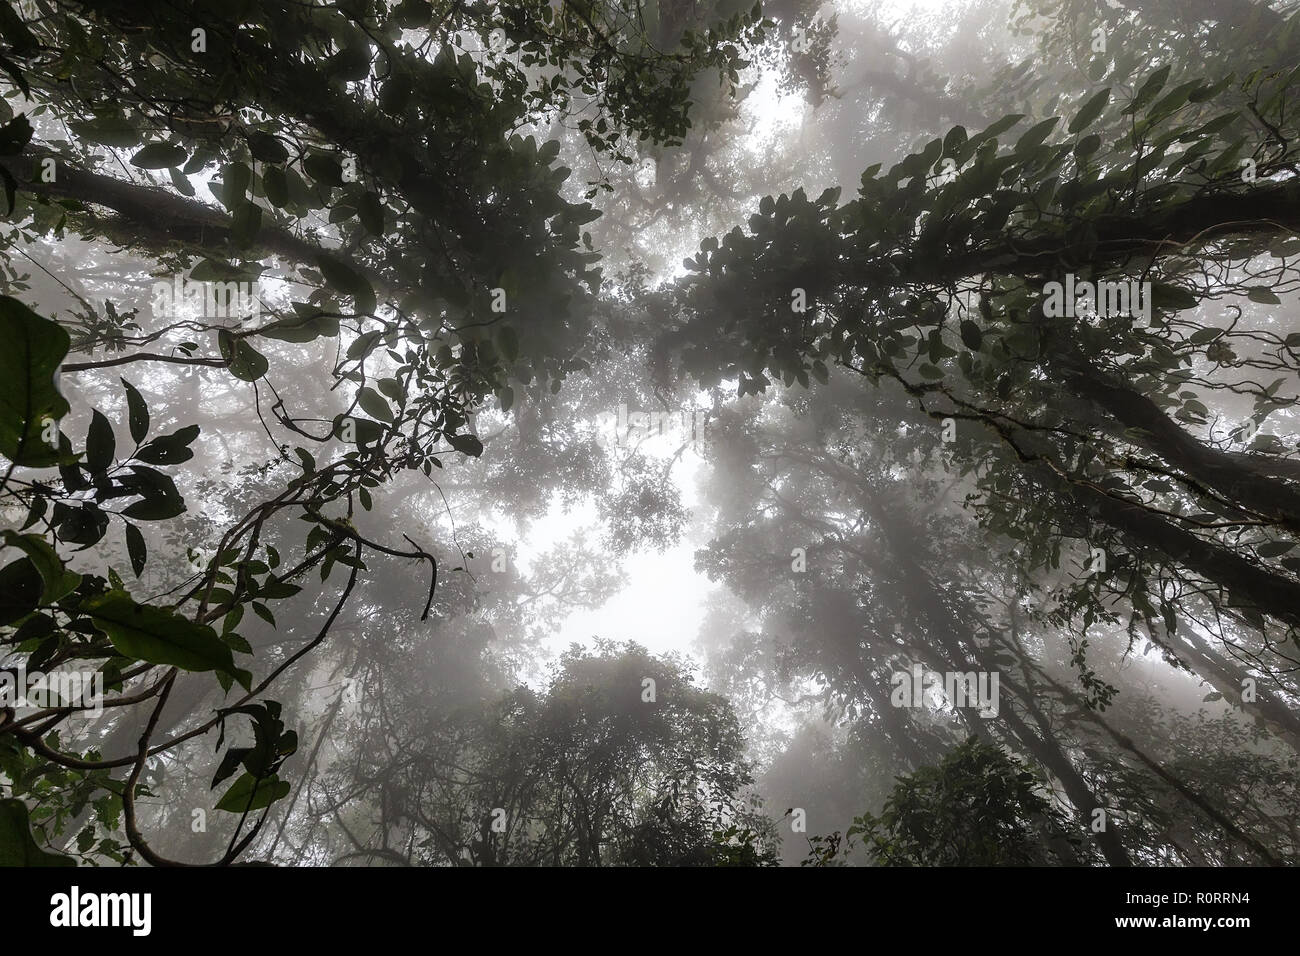 Misty tropical forest tôt le matin, perspective Vue de dessous Banque D'Images